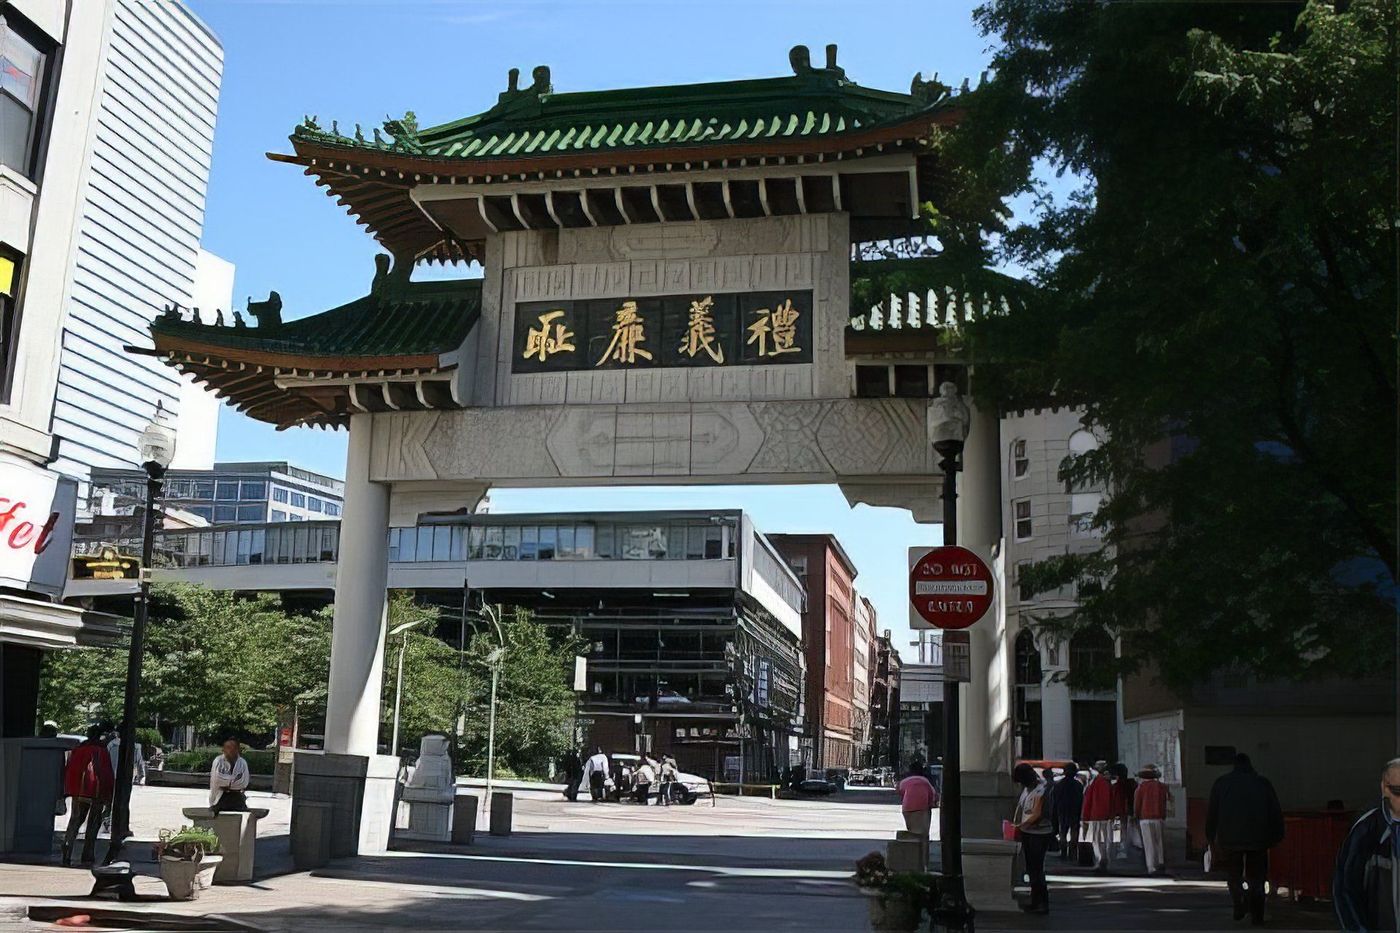 Porte de Chinatown